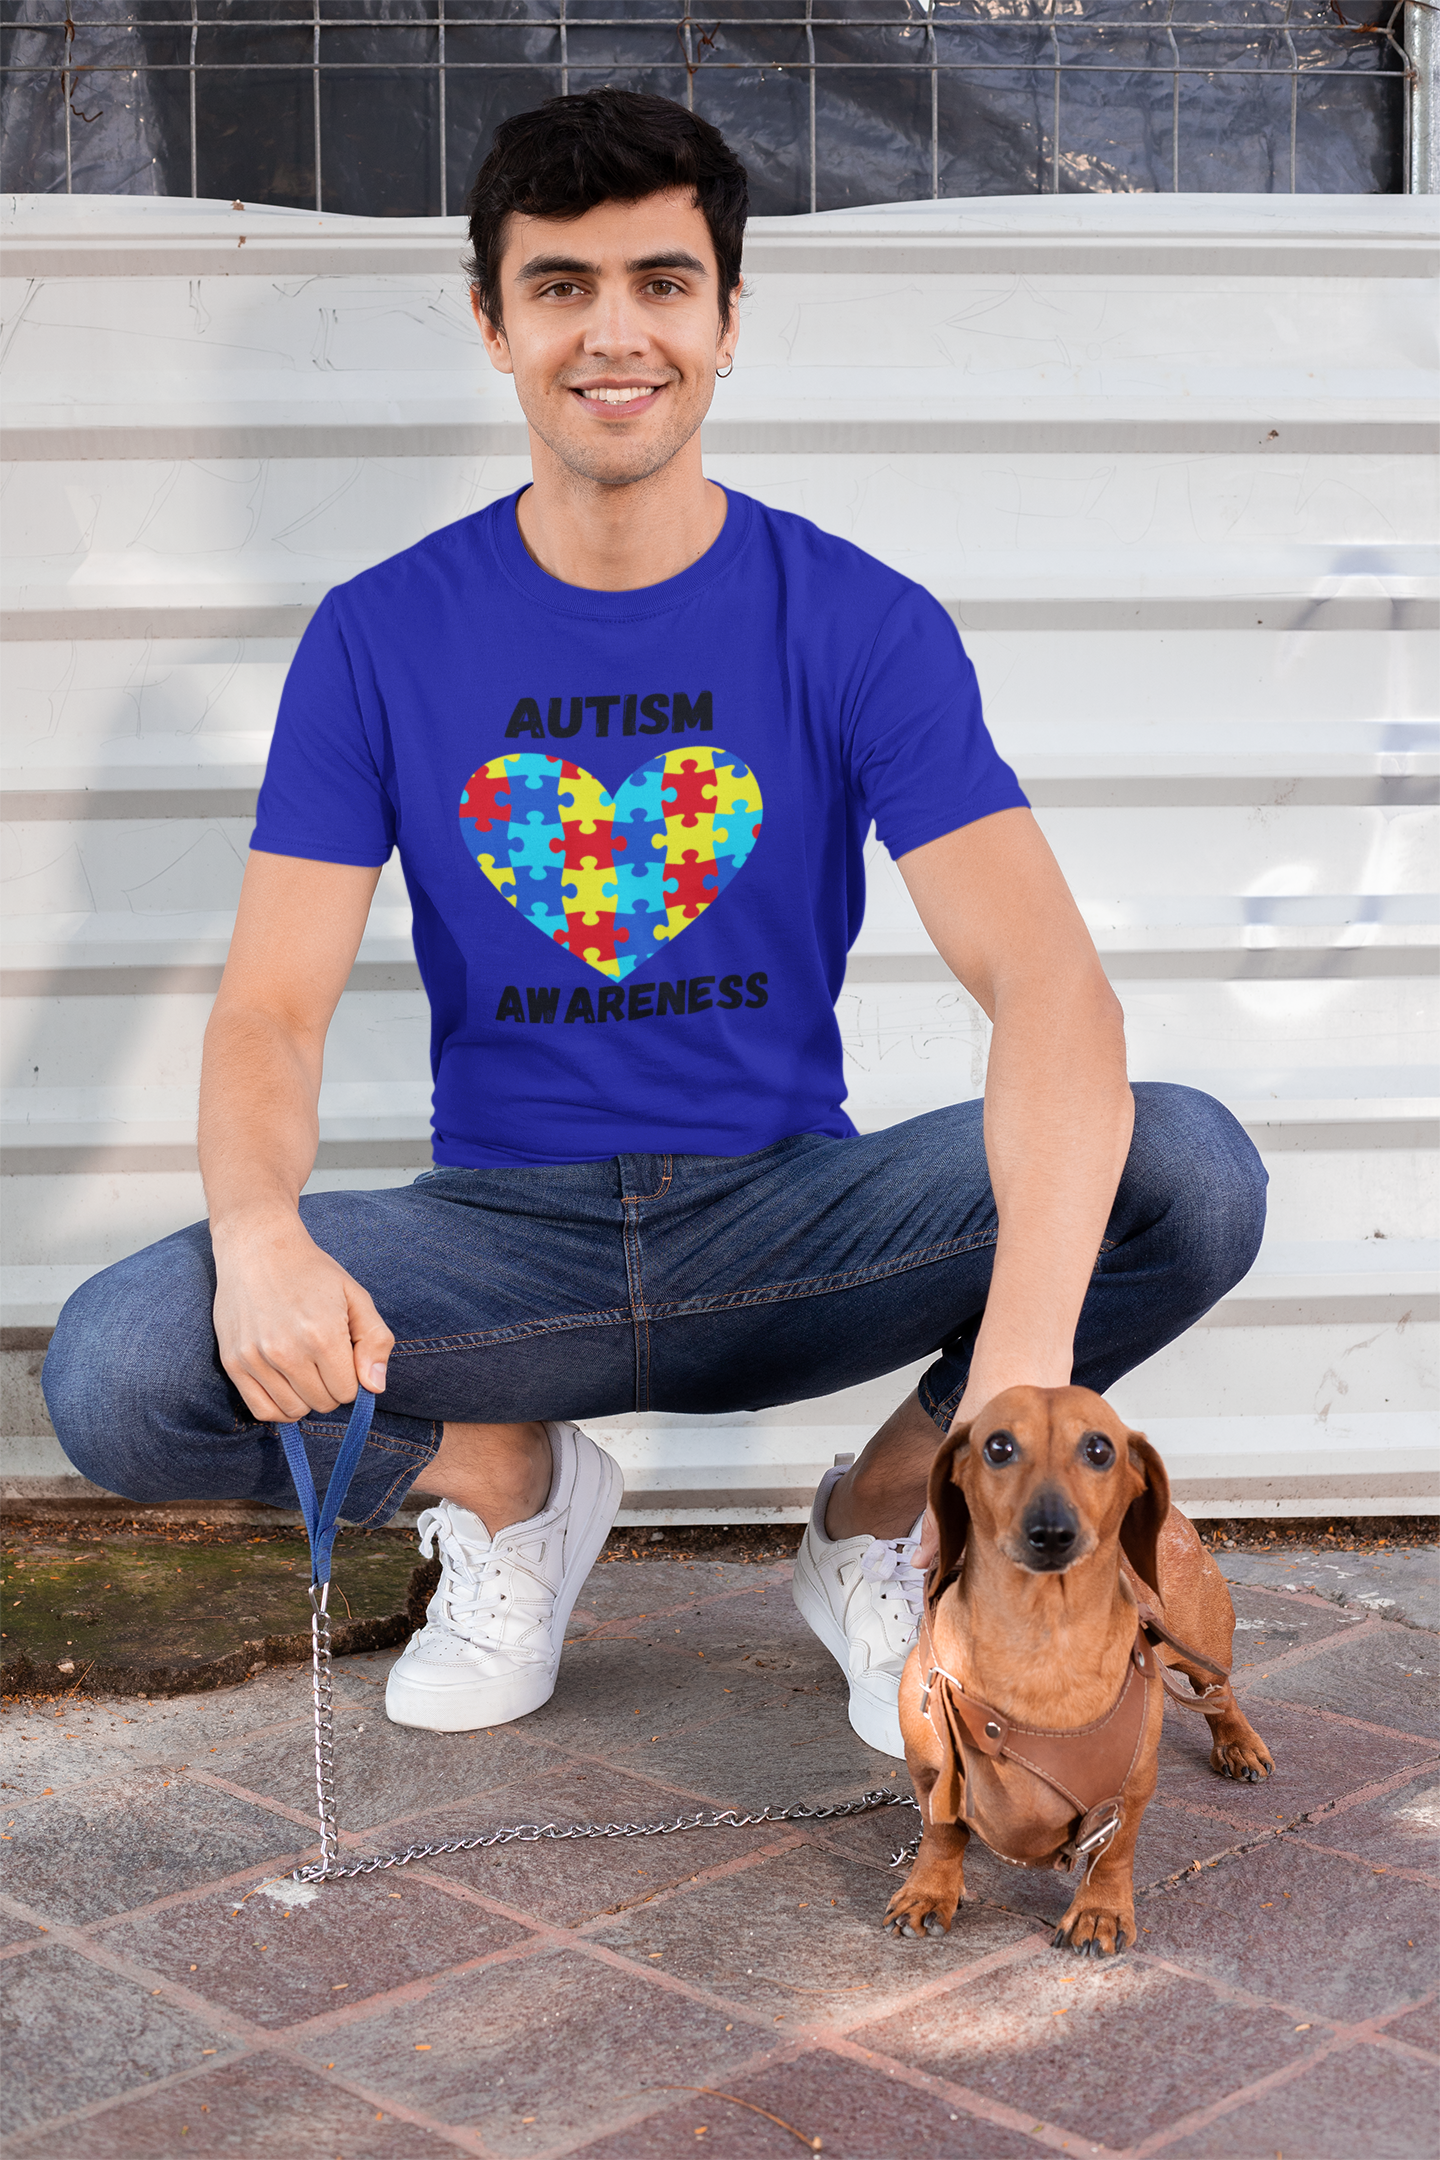 Autism Heart Short Sleeve Shirt